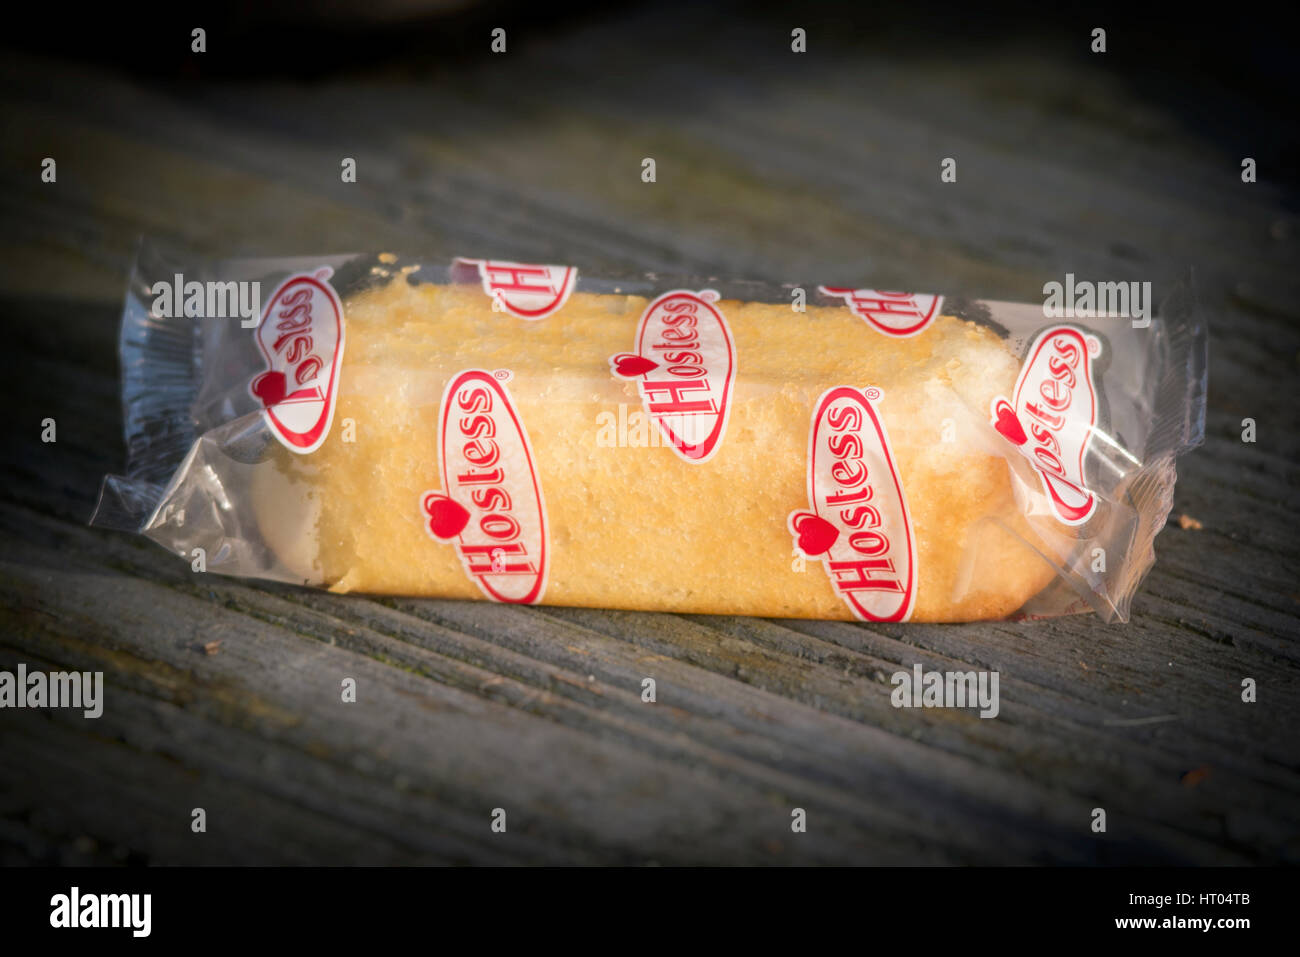 Hostess Twinkie torta, una crema tortina farcita realizzati e distribuiti  da hostess Marche, Twinkies sono state prodotte per la prima volta in  America nel 1930 Foto stock - Alamy